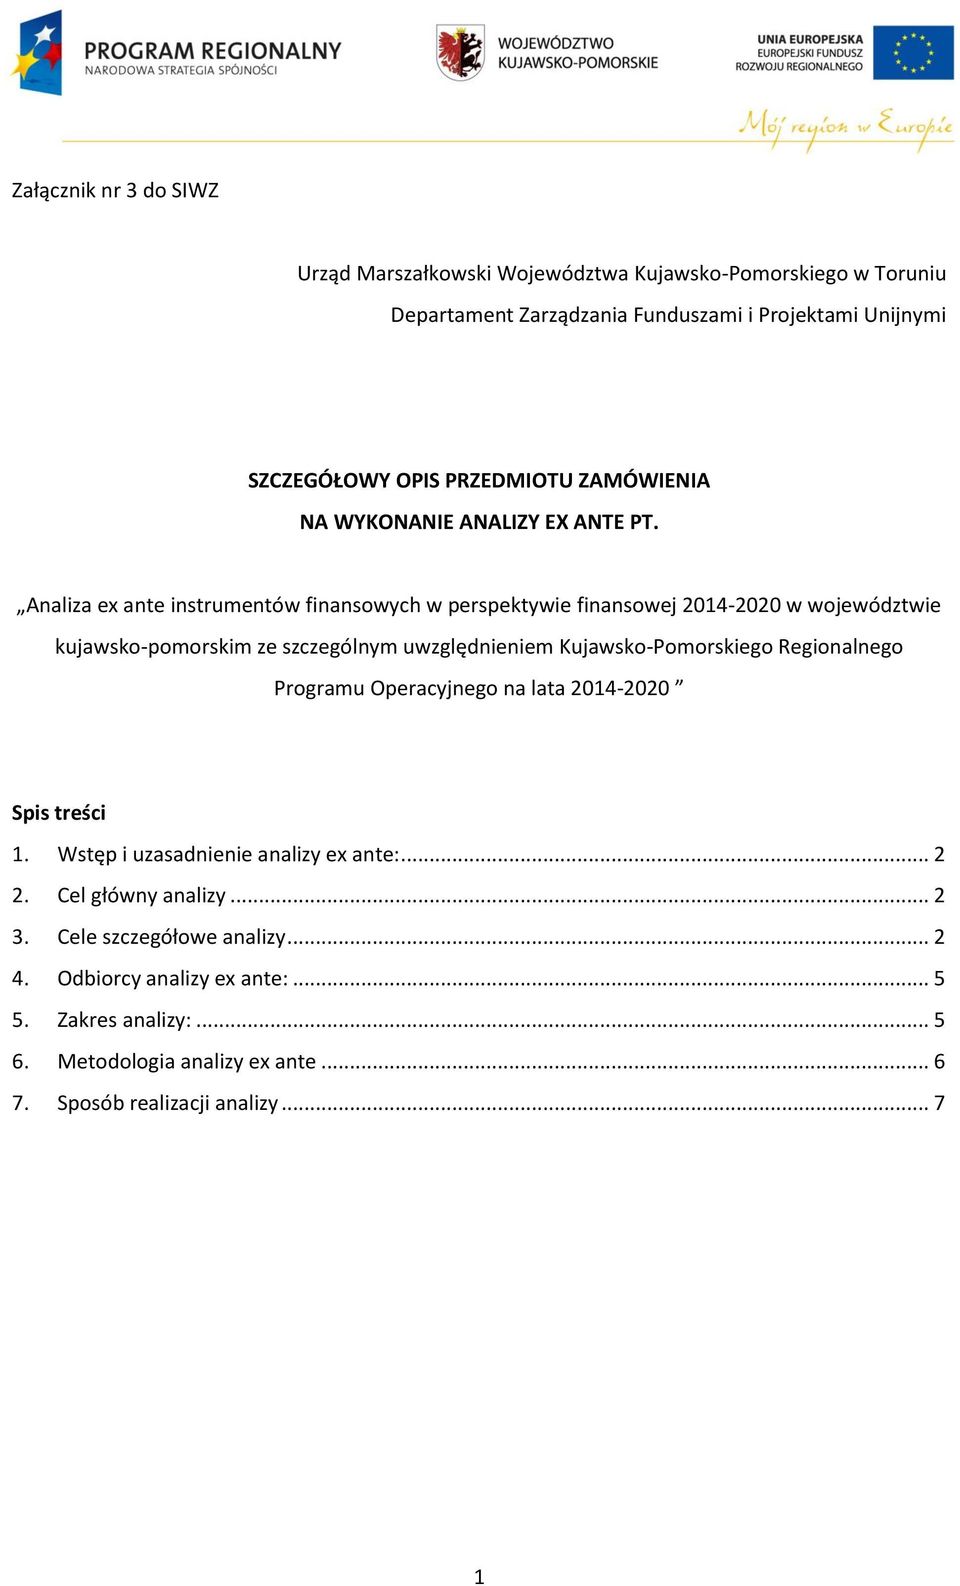 Analiza ex ante instrumentów finansowych w perspektywie finansowej 2014-2020 w województwie kujawsko-pomorskim ze szczególnym uwzględnieniem Kujawsko-Pomorskiego